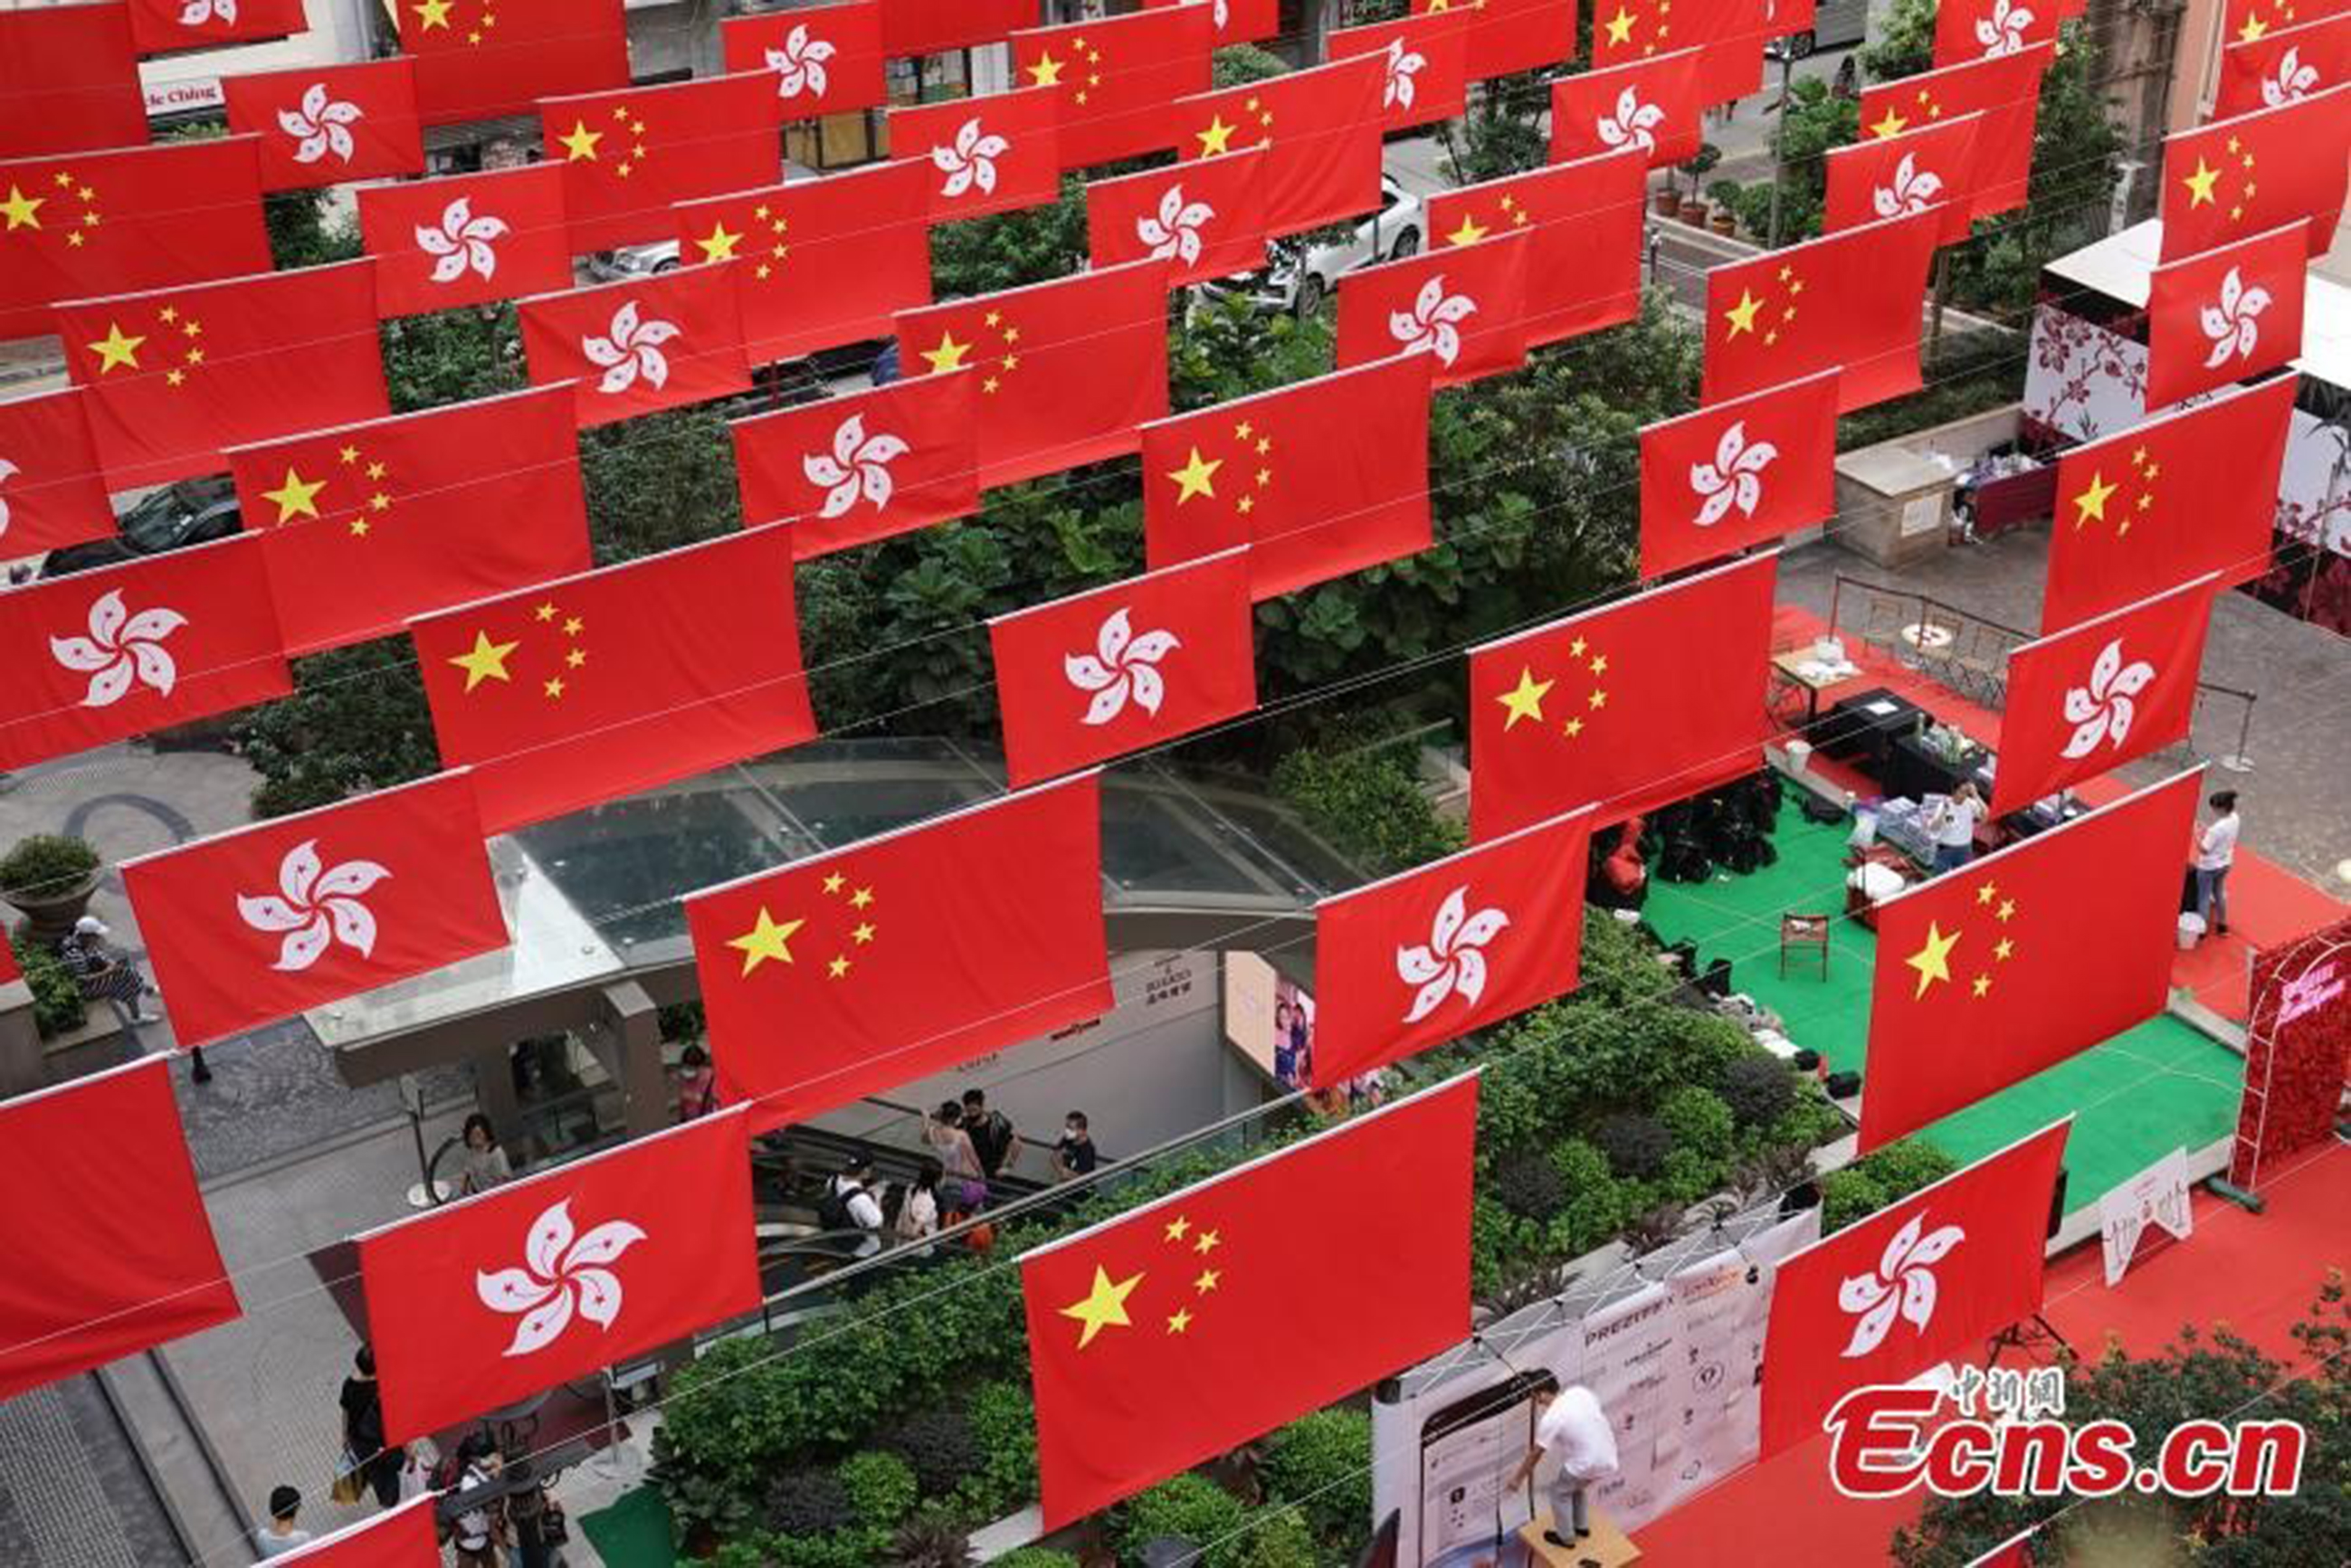 Hongkong zászlódíszbe öltözött. A Kínai Népköztársaság mellett a Hongkong lobogója